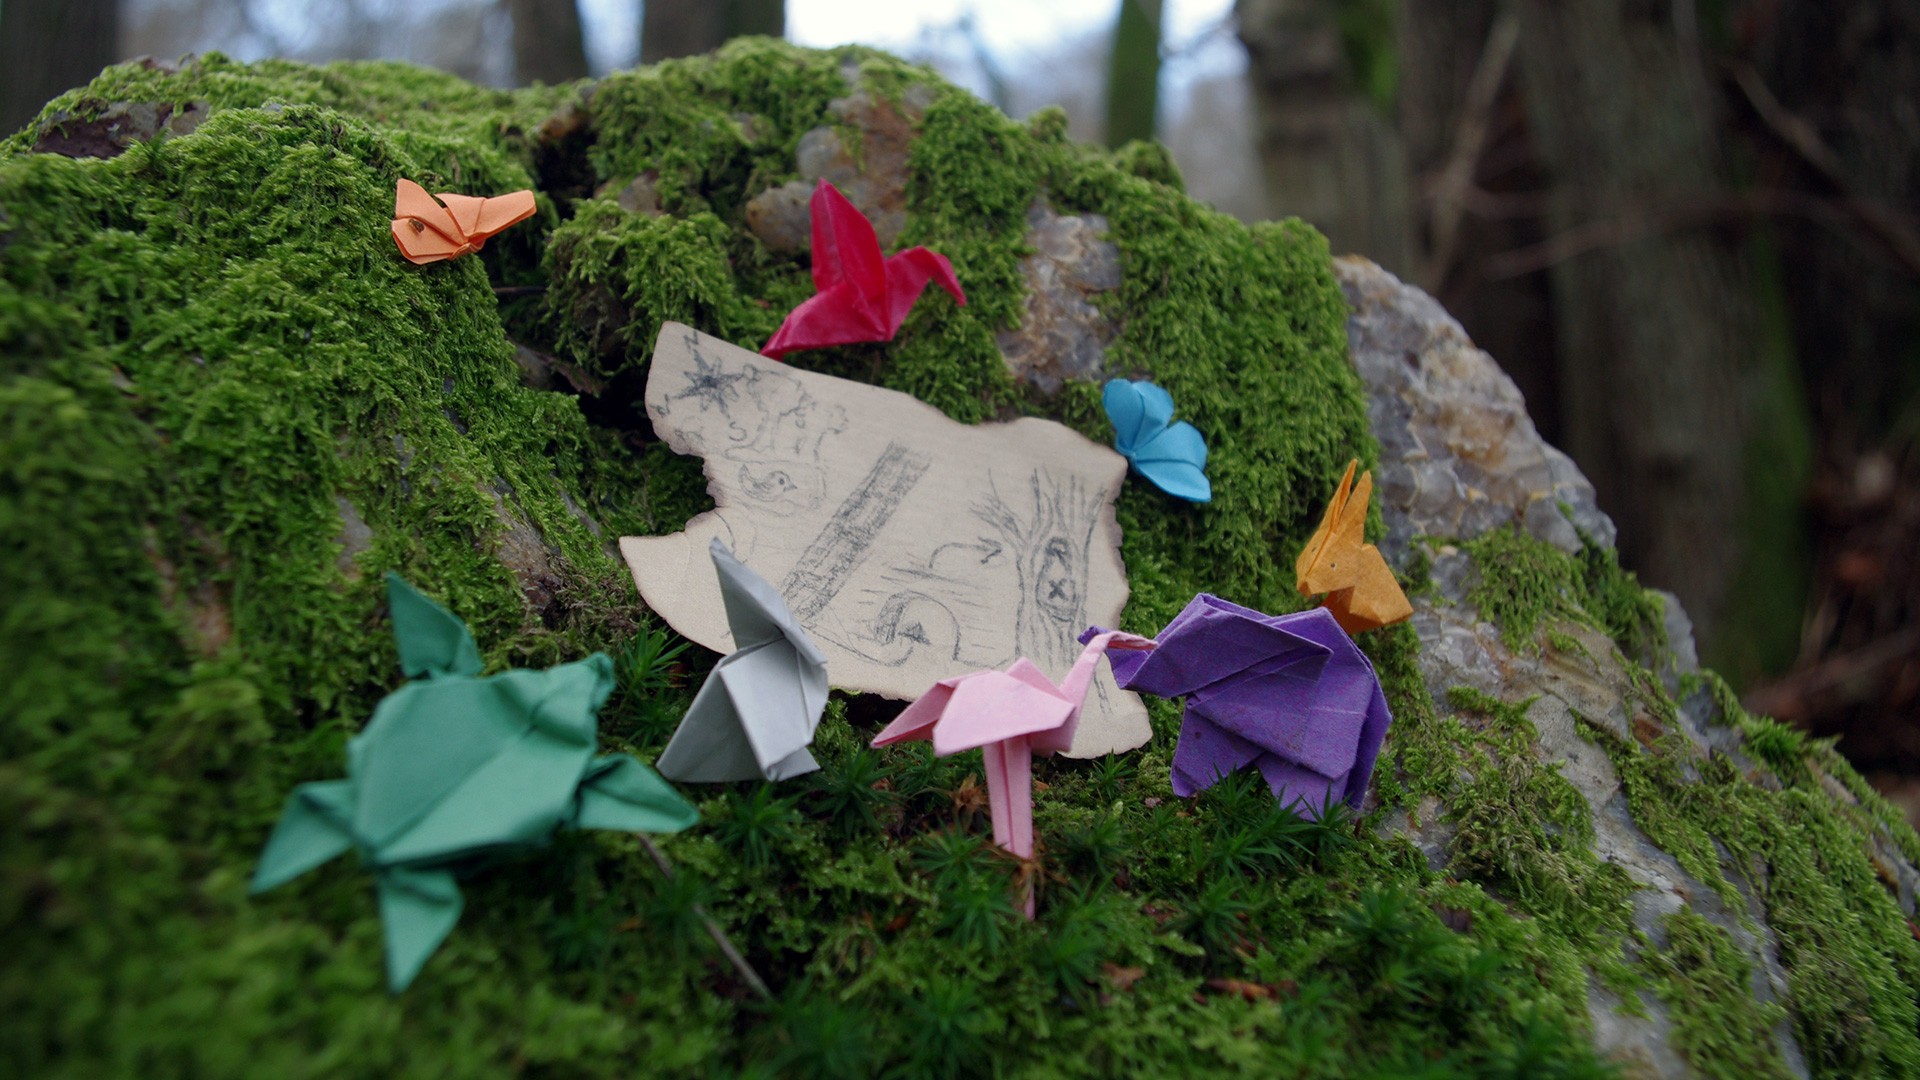 Kleine Origamis sitzen auf einem moosbedeckten Stein vor einer Miniatur-Schatzkarte.